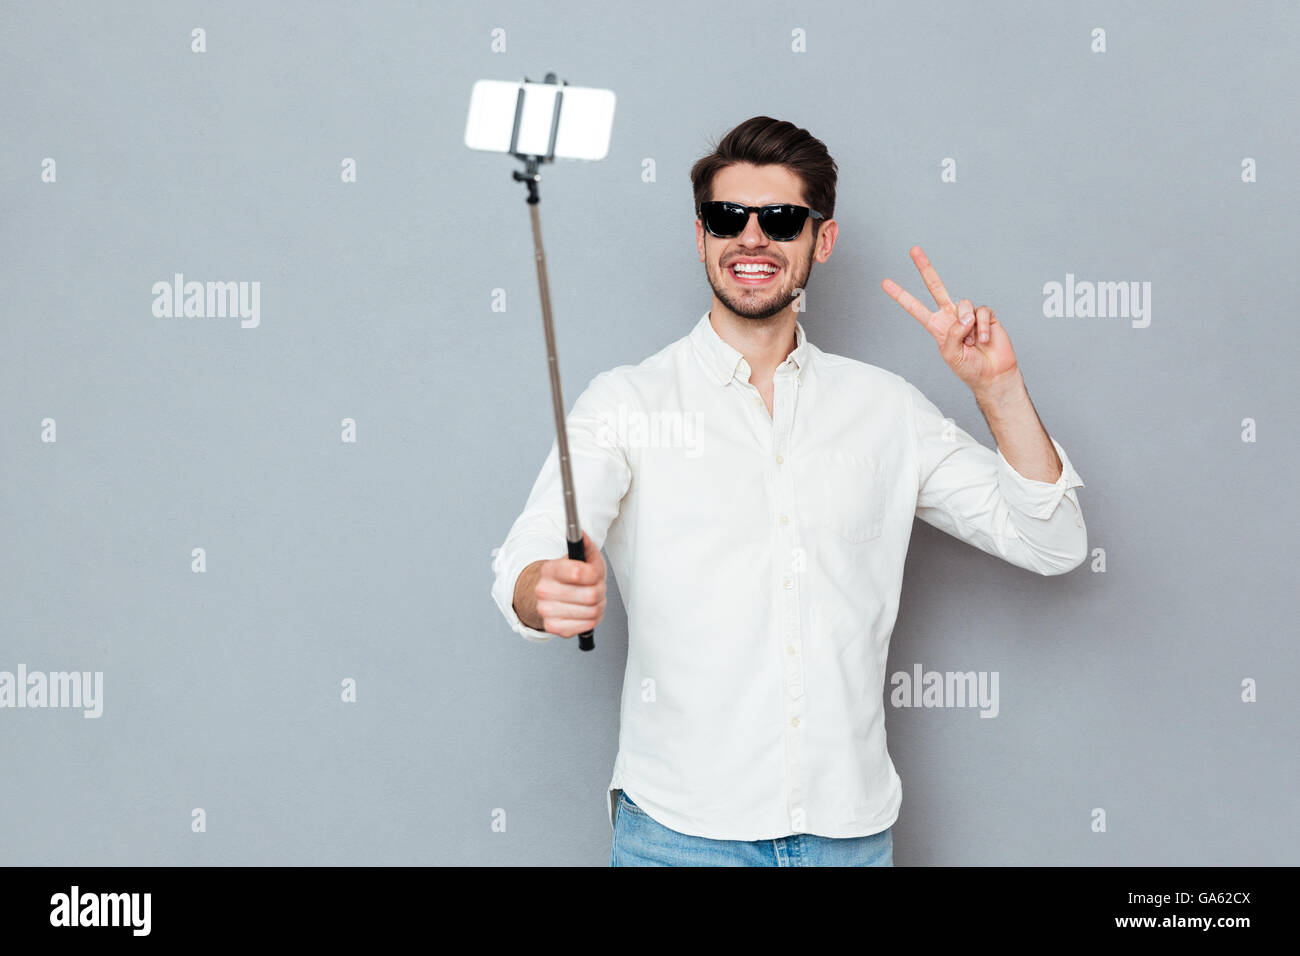 Lächelnd jungen Mann mit Sonnenbrille fotografieren mit Smartphone und Selfie Stick auf einem grauen Hintergrund isoliert Stockfoto